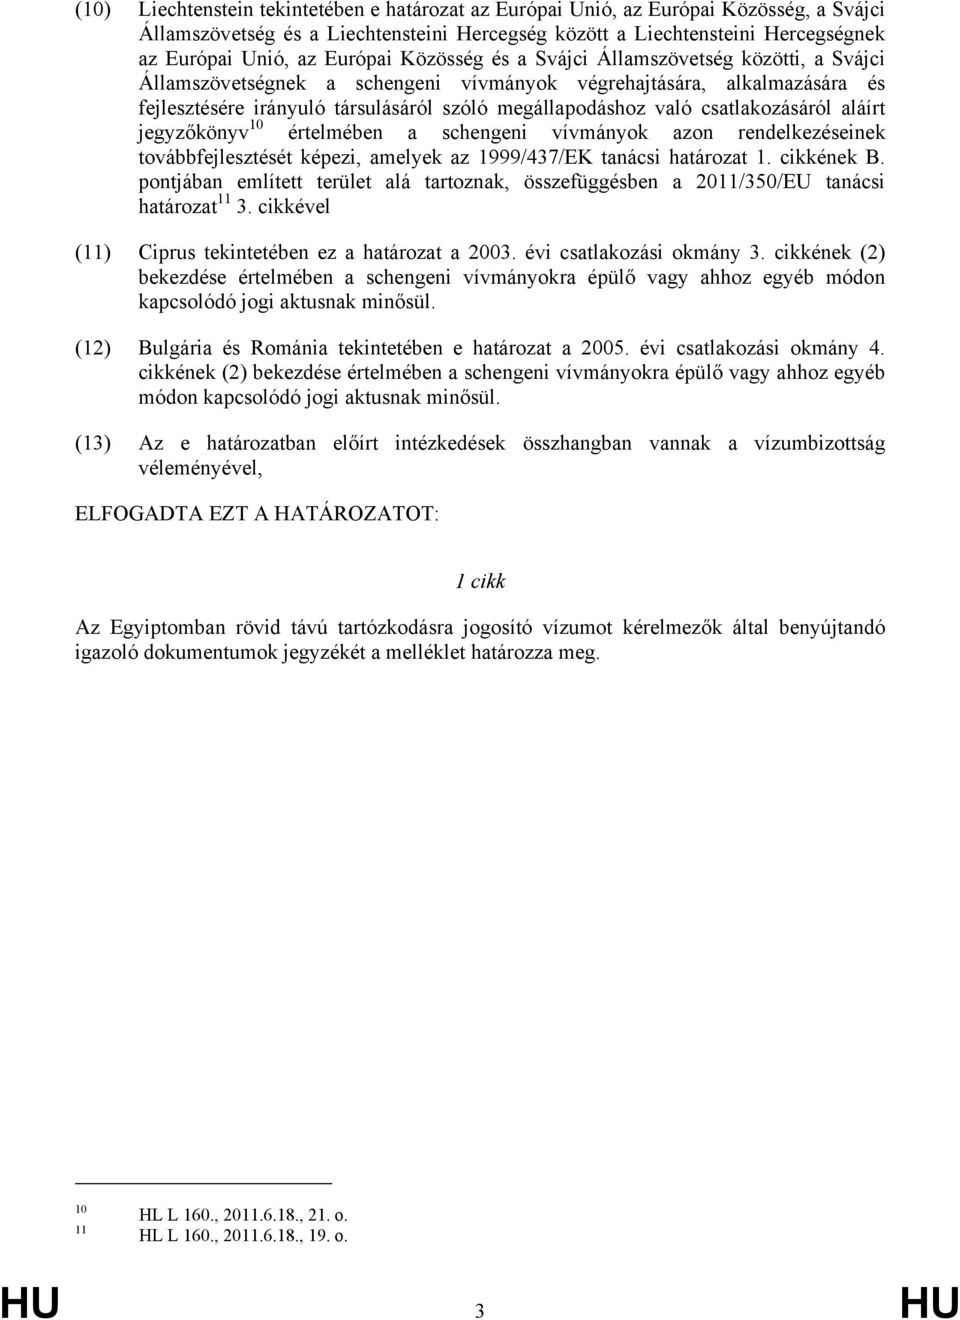 csatlakozásáról aláírt jegyzőkönyv 10 értelmében a schengeni vívmányok azon rendelkezéseinek továbbfejlesztését képezi, amelyek az 1999/437/EK tanácsi határozat 1. cikkének B.